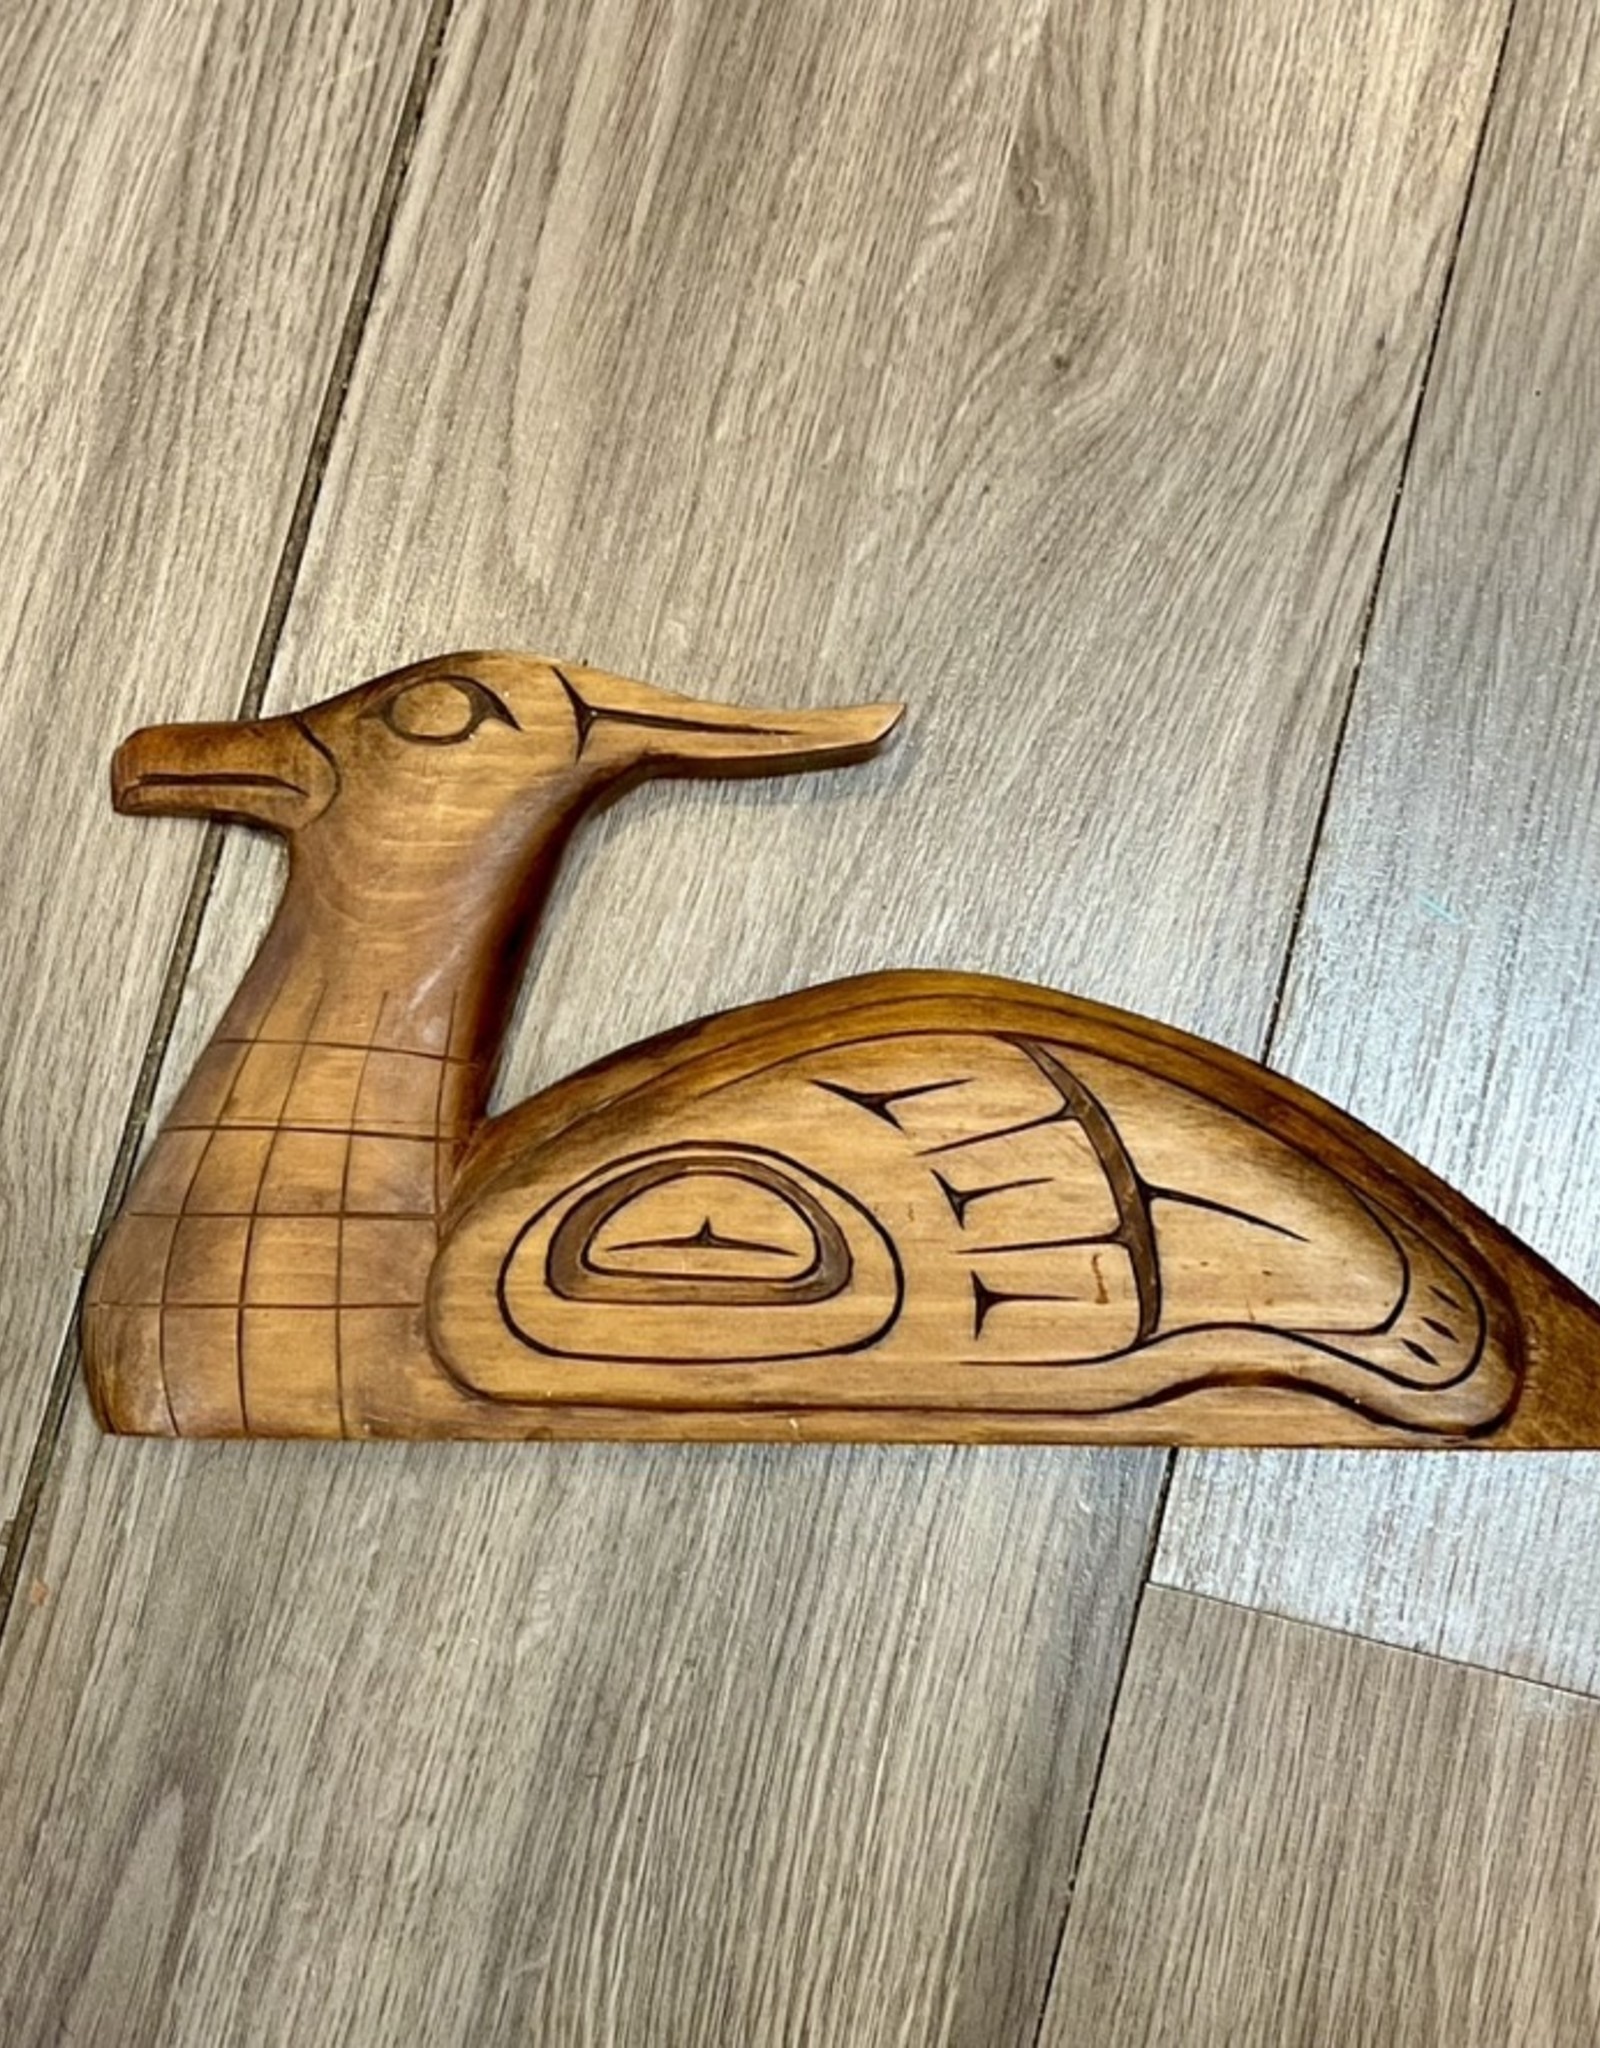 Aboriginal - Loon Carving